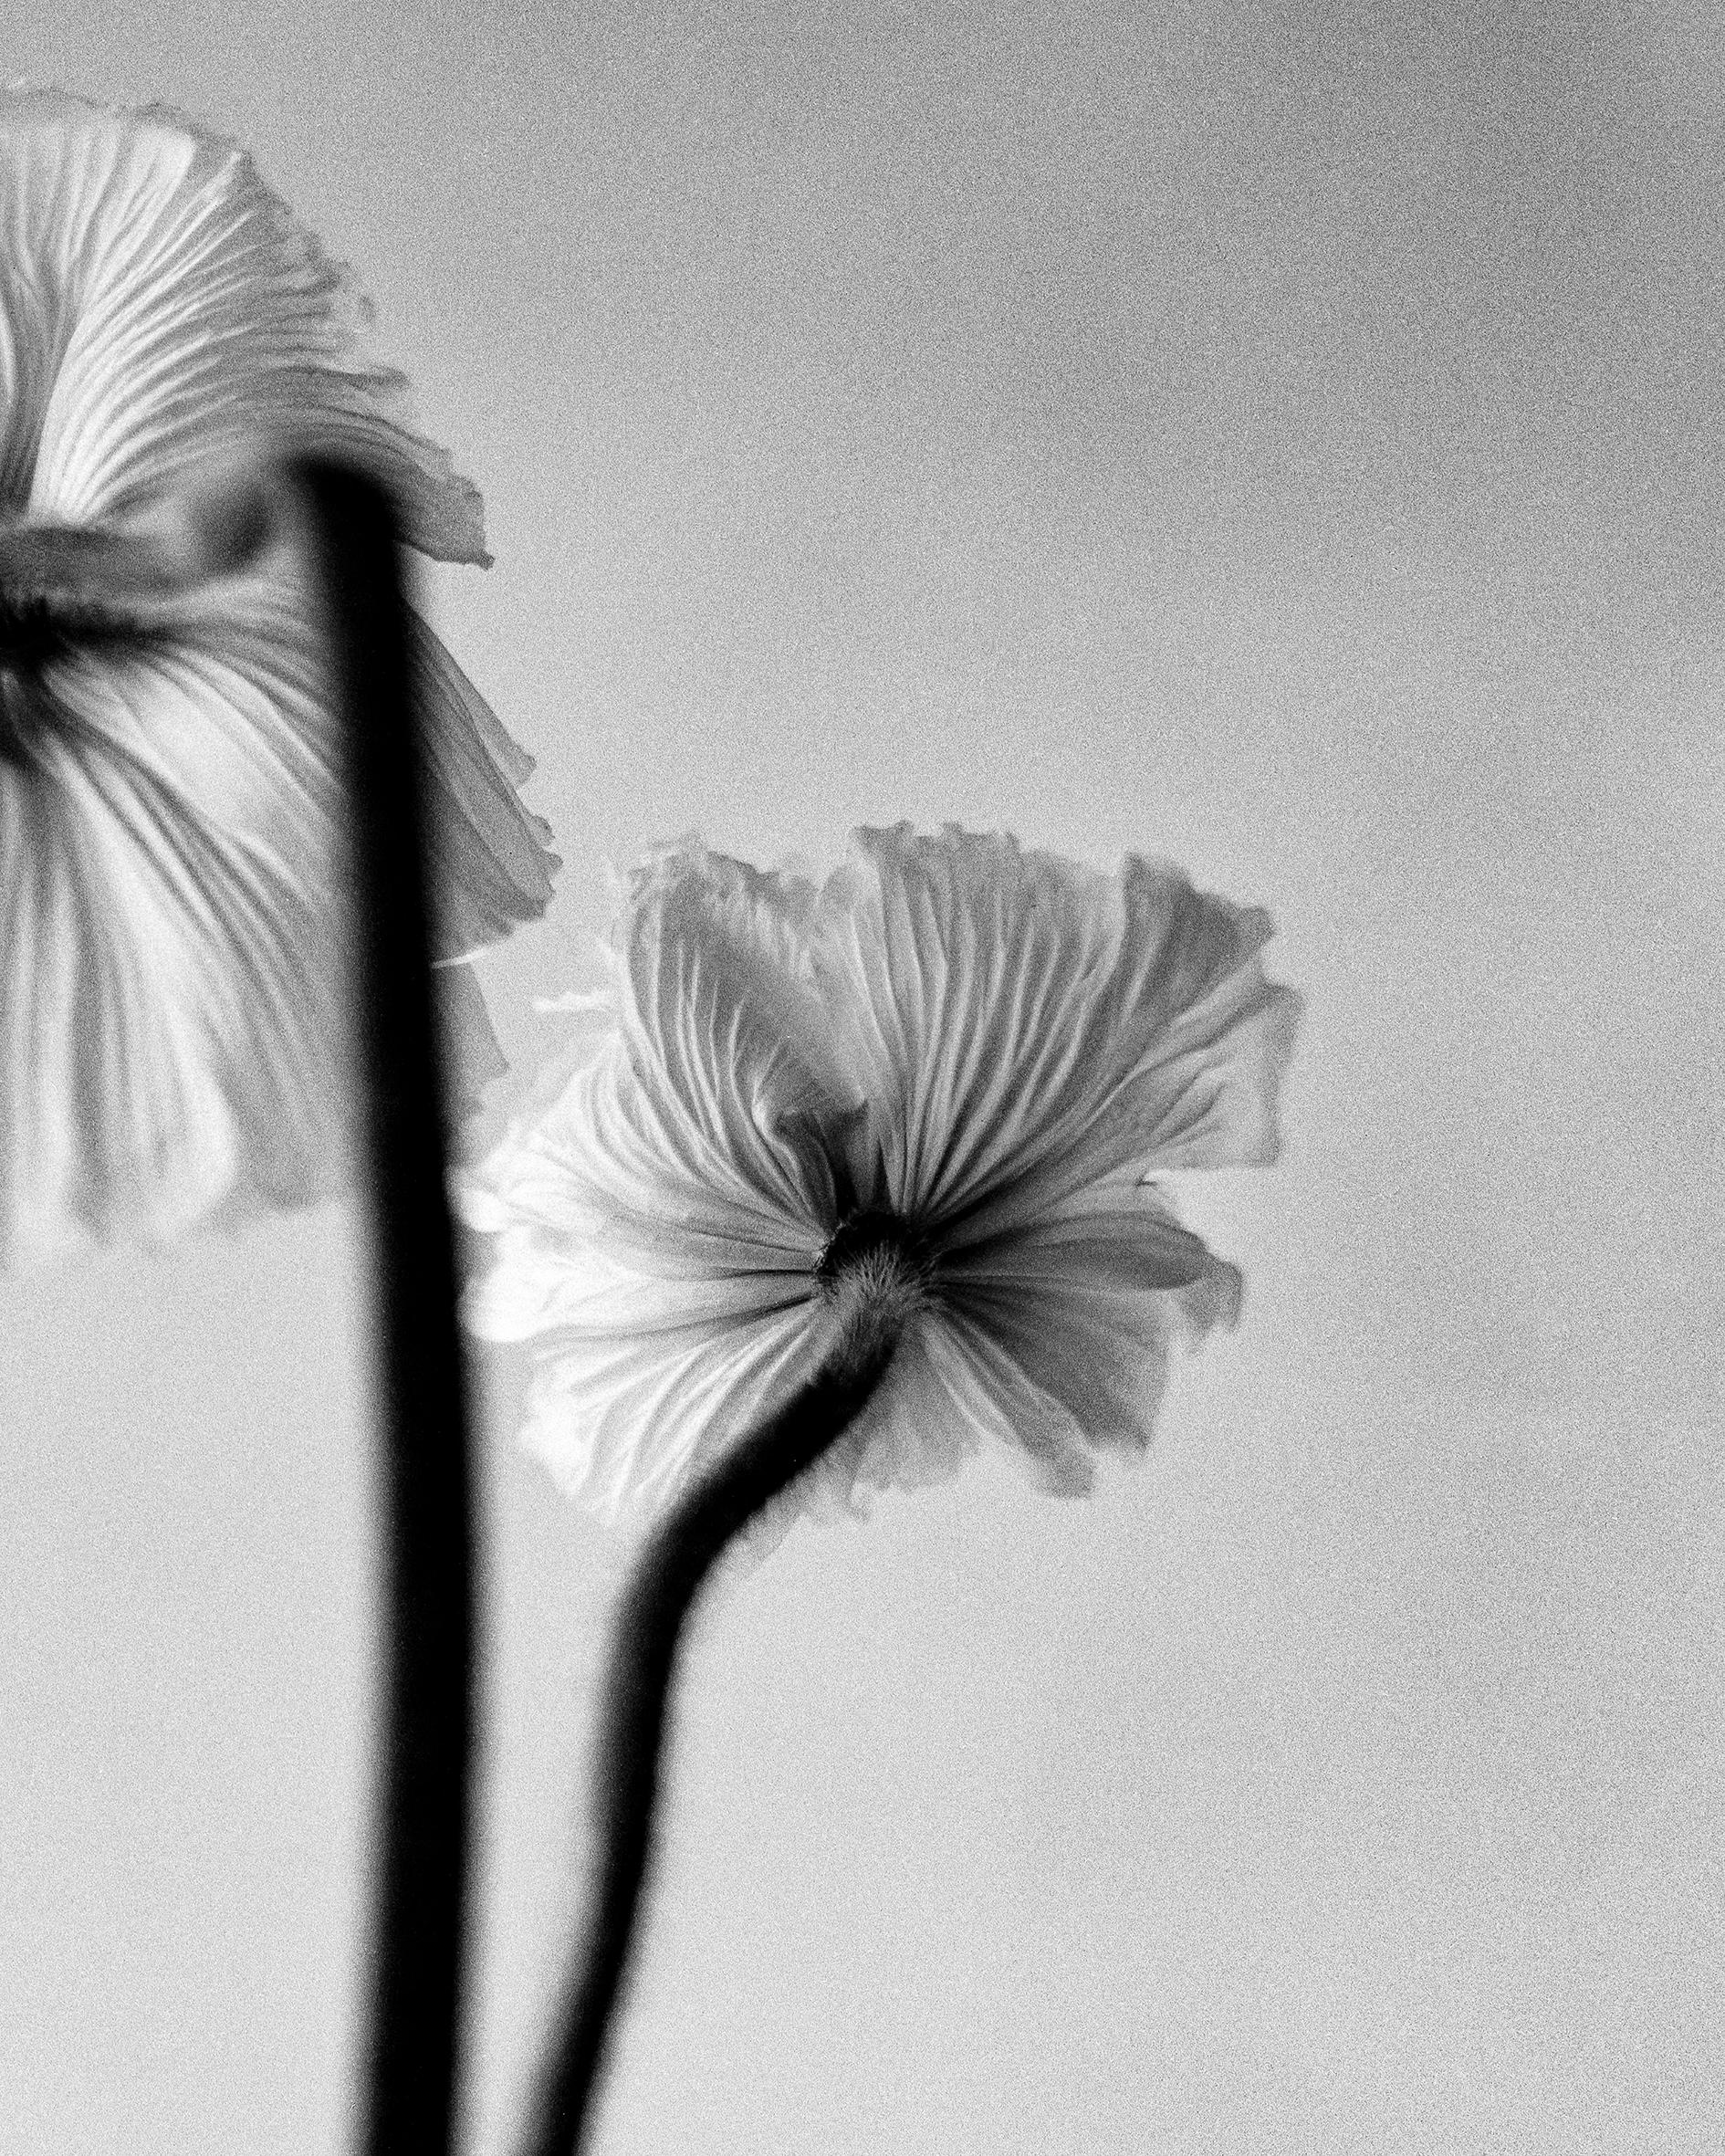 Drei Mohnblumen – Schwarz-Weiß-Blumenfotografie in limitierter Auflage von 20 Stück (Zeitgenössisch), Photograph, von Ugne Pouwell